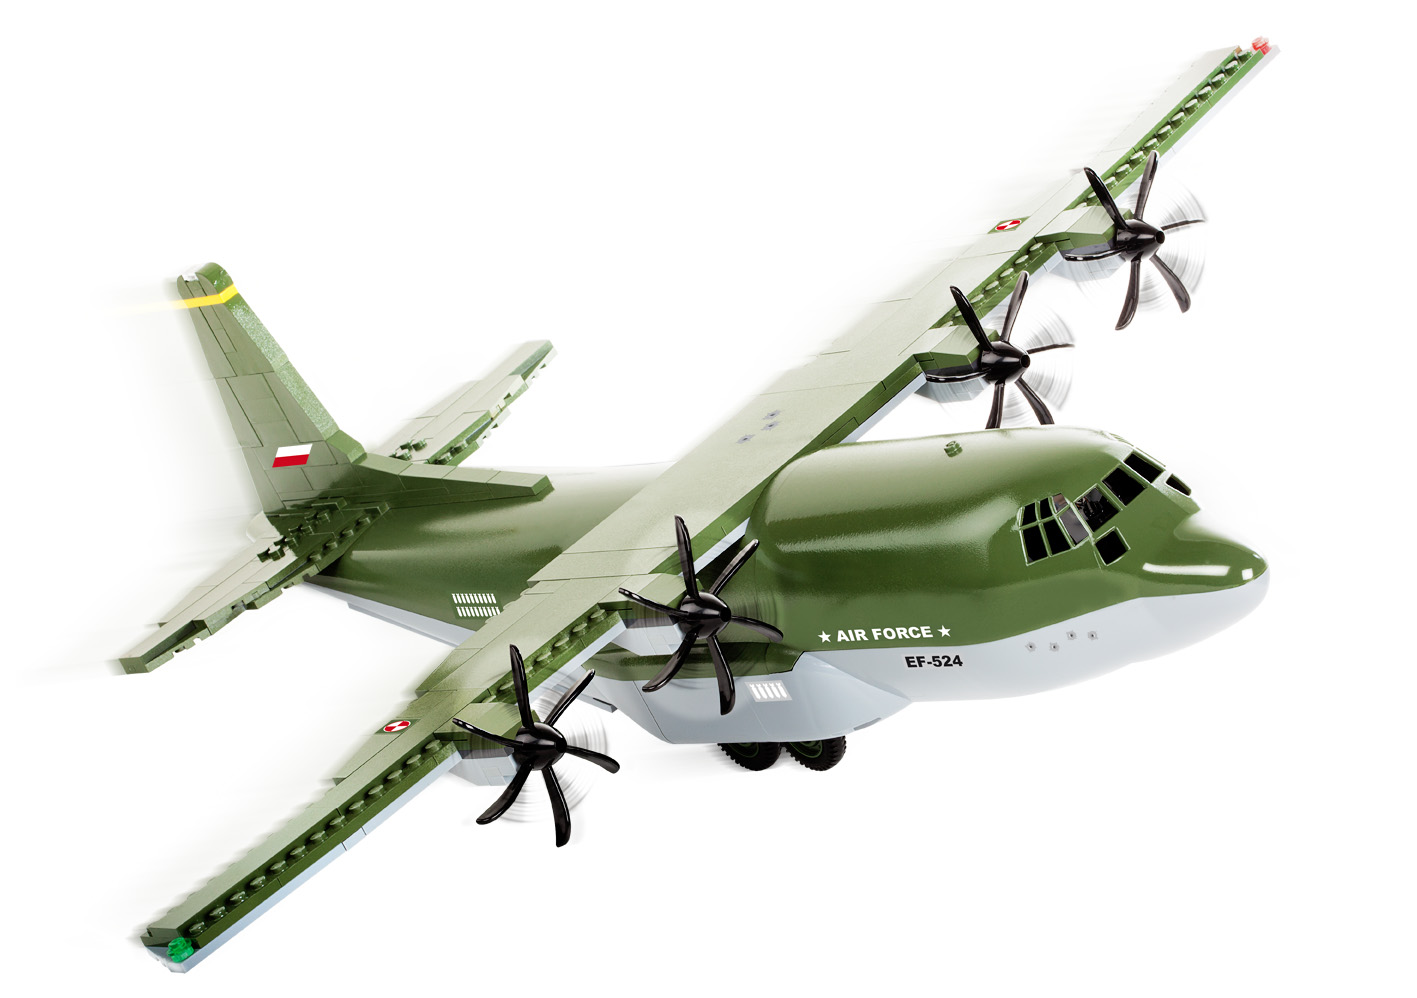 Luftwaffe C-130 Hercules